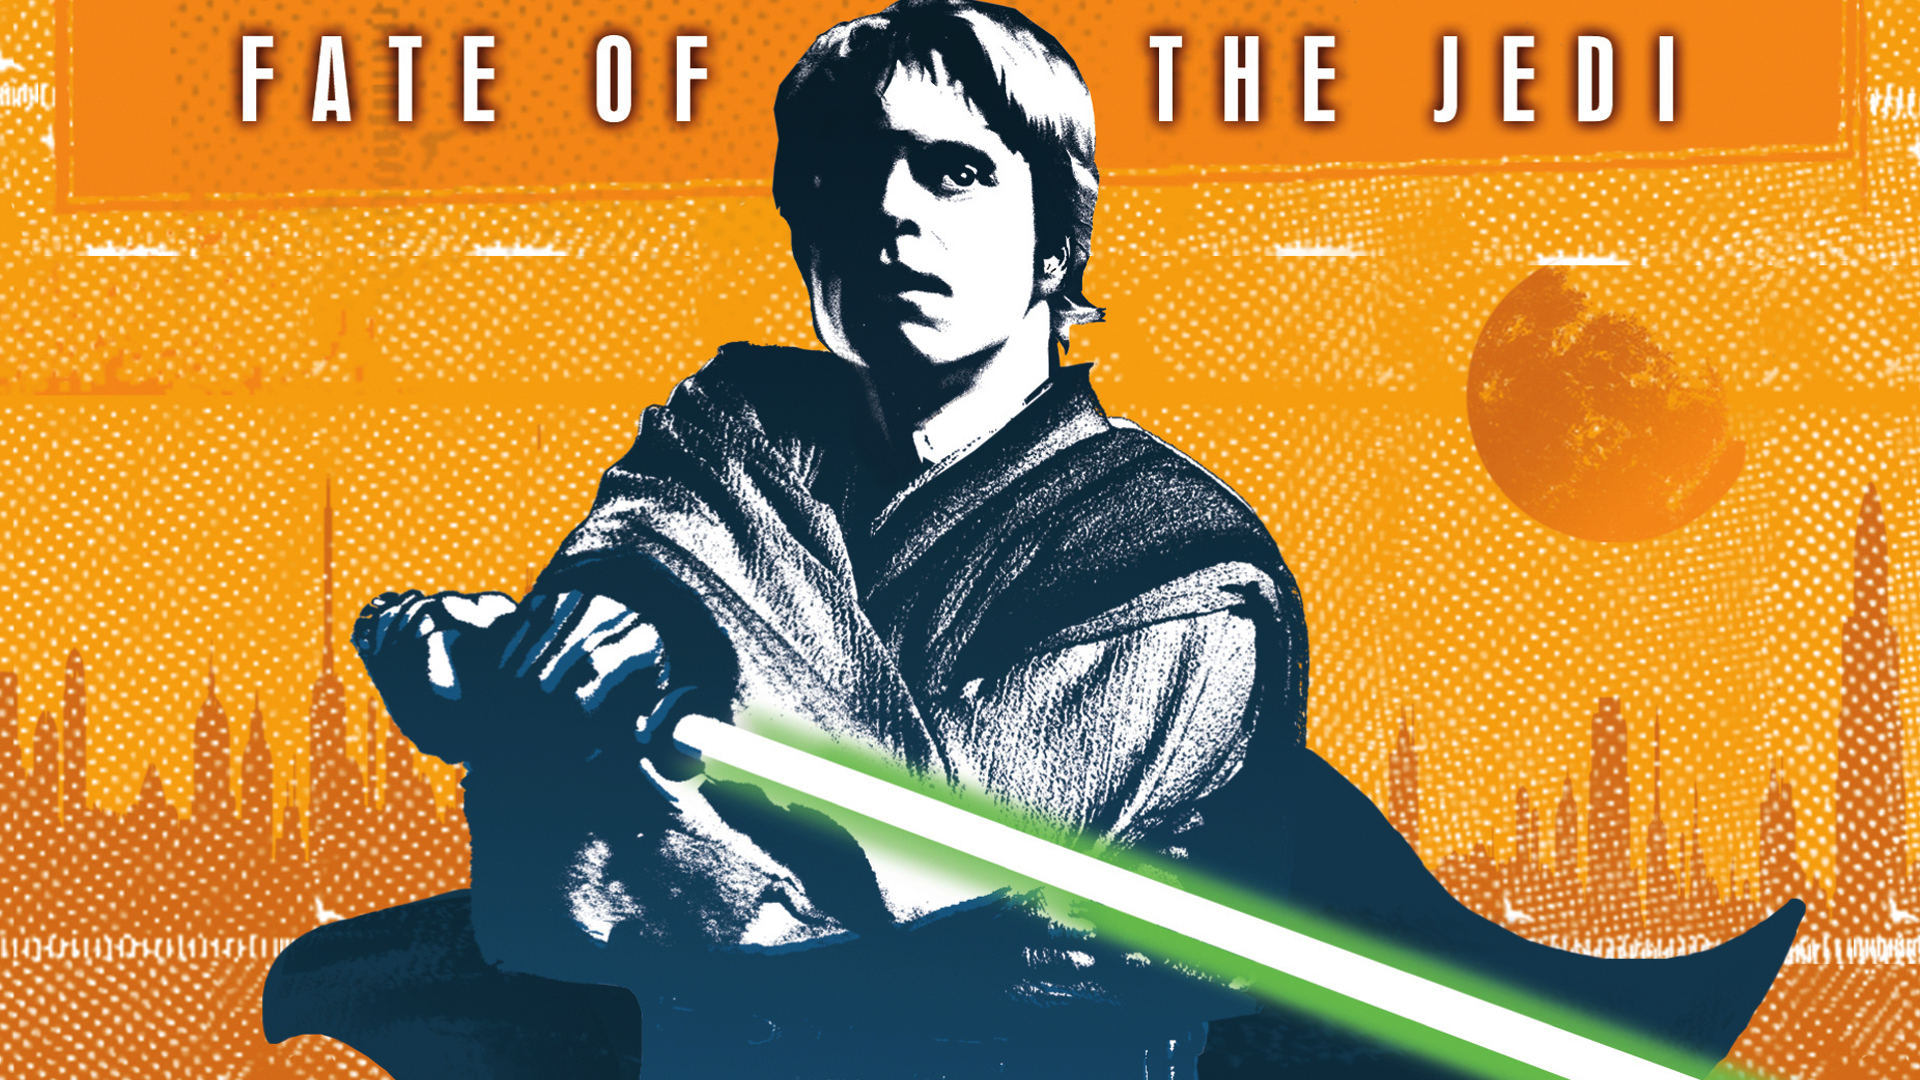 Star Wars, lightsabers, Jedi, Luke Skywalker, Mark Hamill - desktop wallpaper